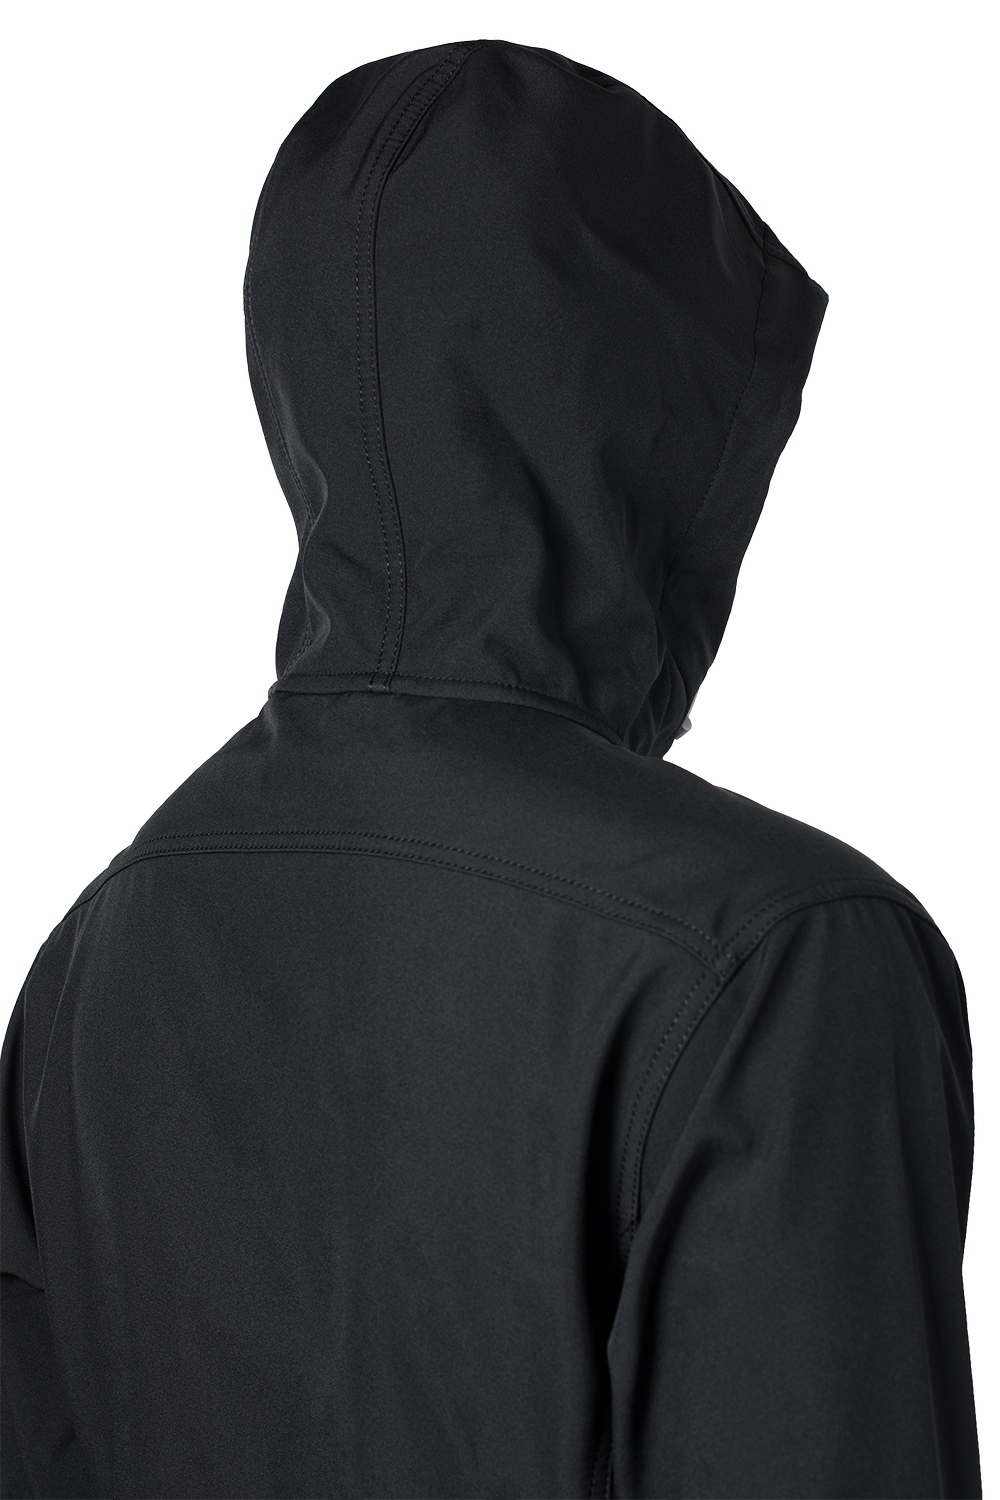 Универсальная soft shell куртка Hot купить в магазине экипировочной одежды O3 Ozone